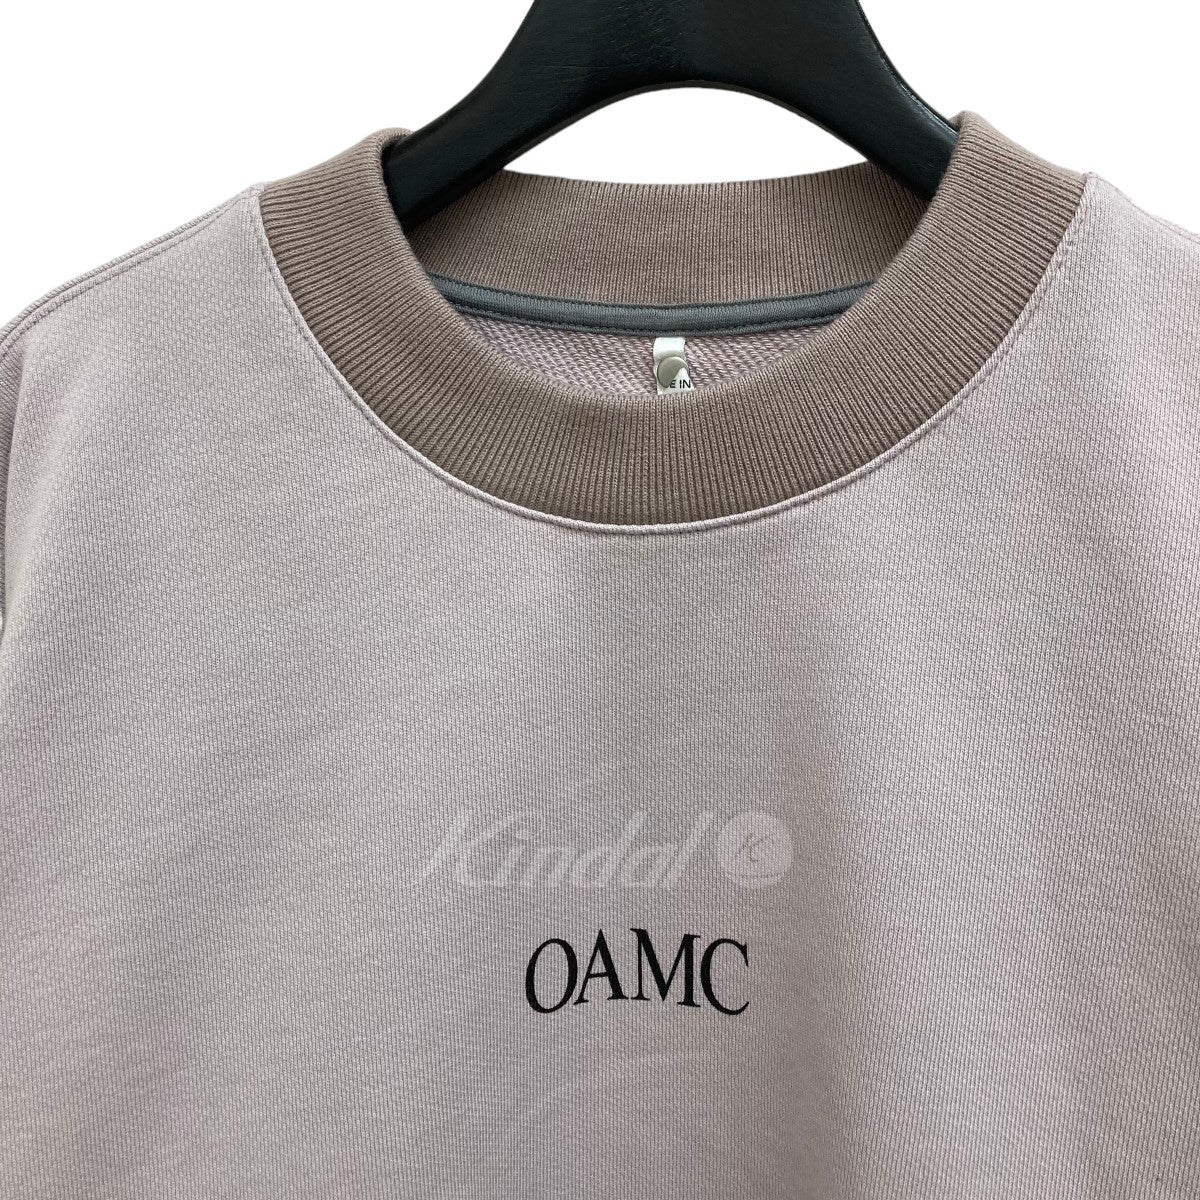 OAMC(オーエーエムシー) スウェット OAMQ704582